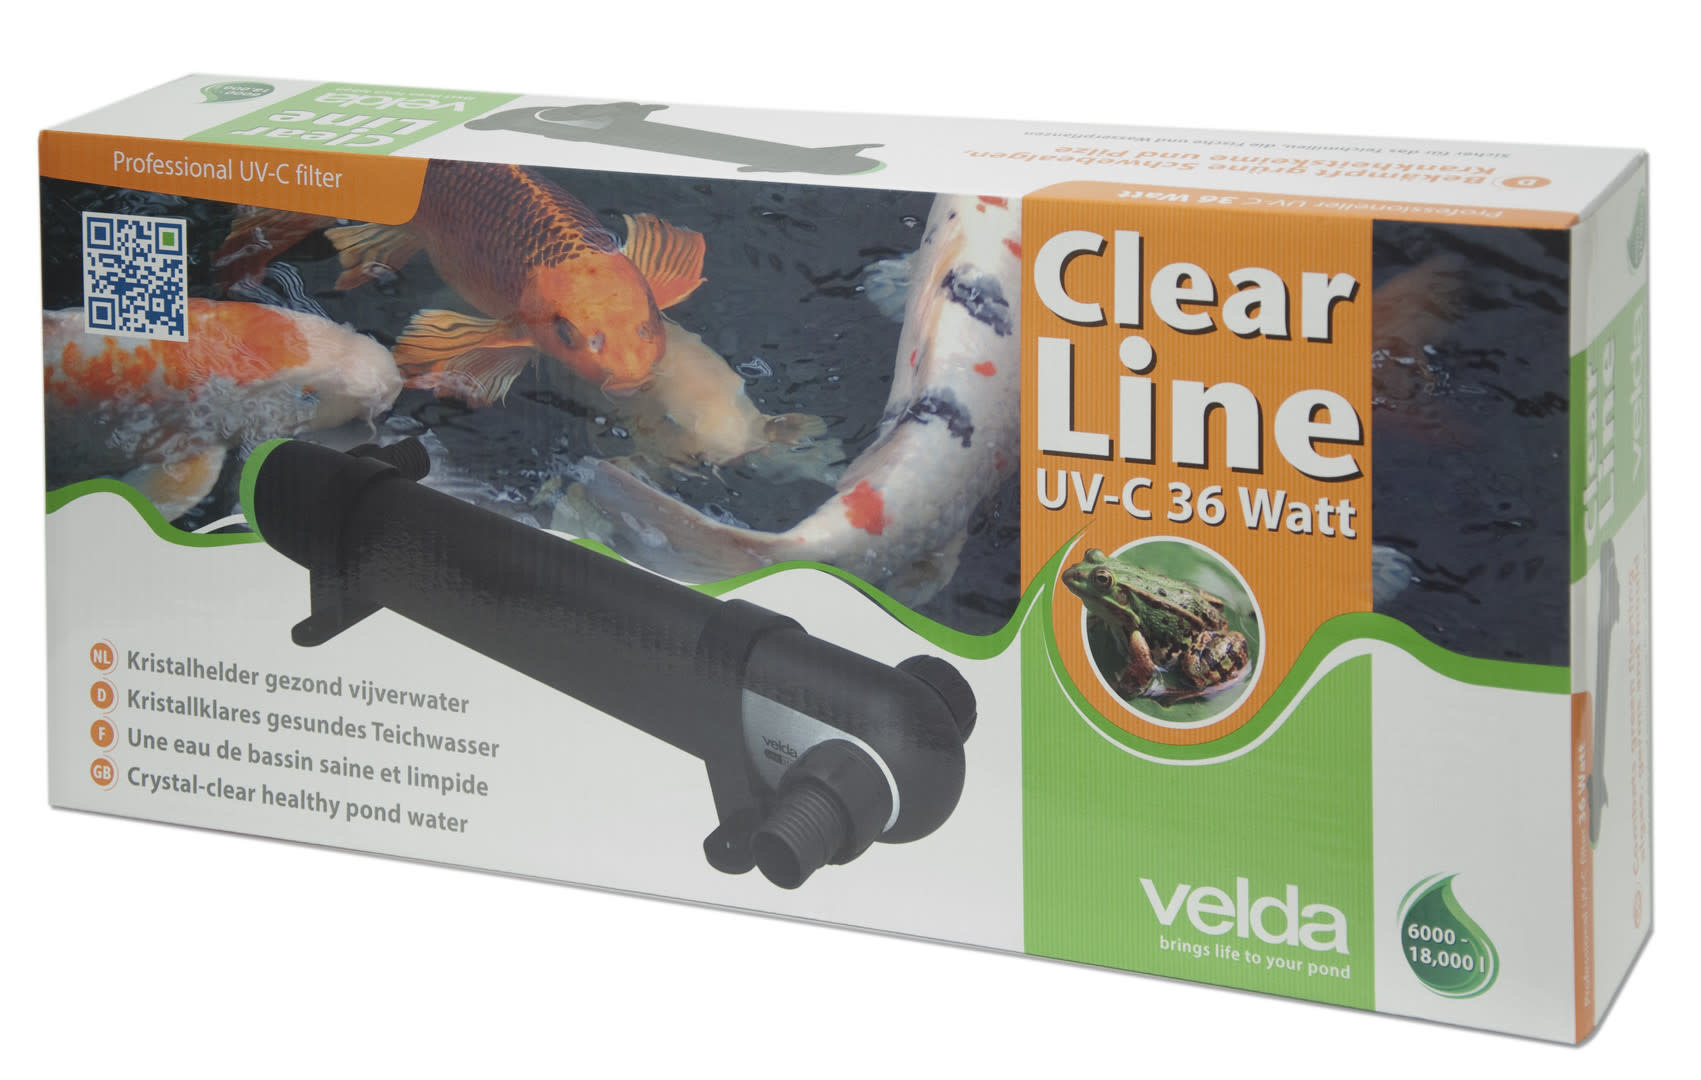 Afbeelding Velda Clear Line UV-C 36 watt door A2koi.nl